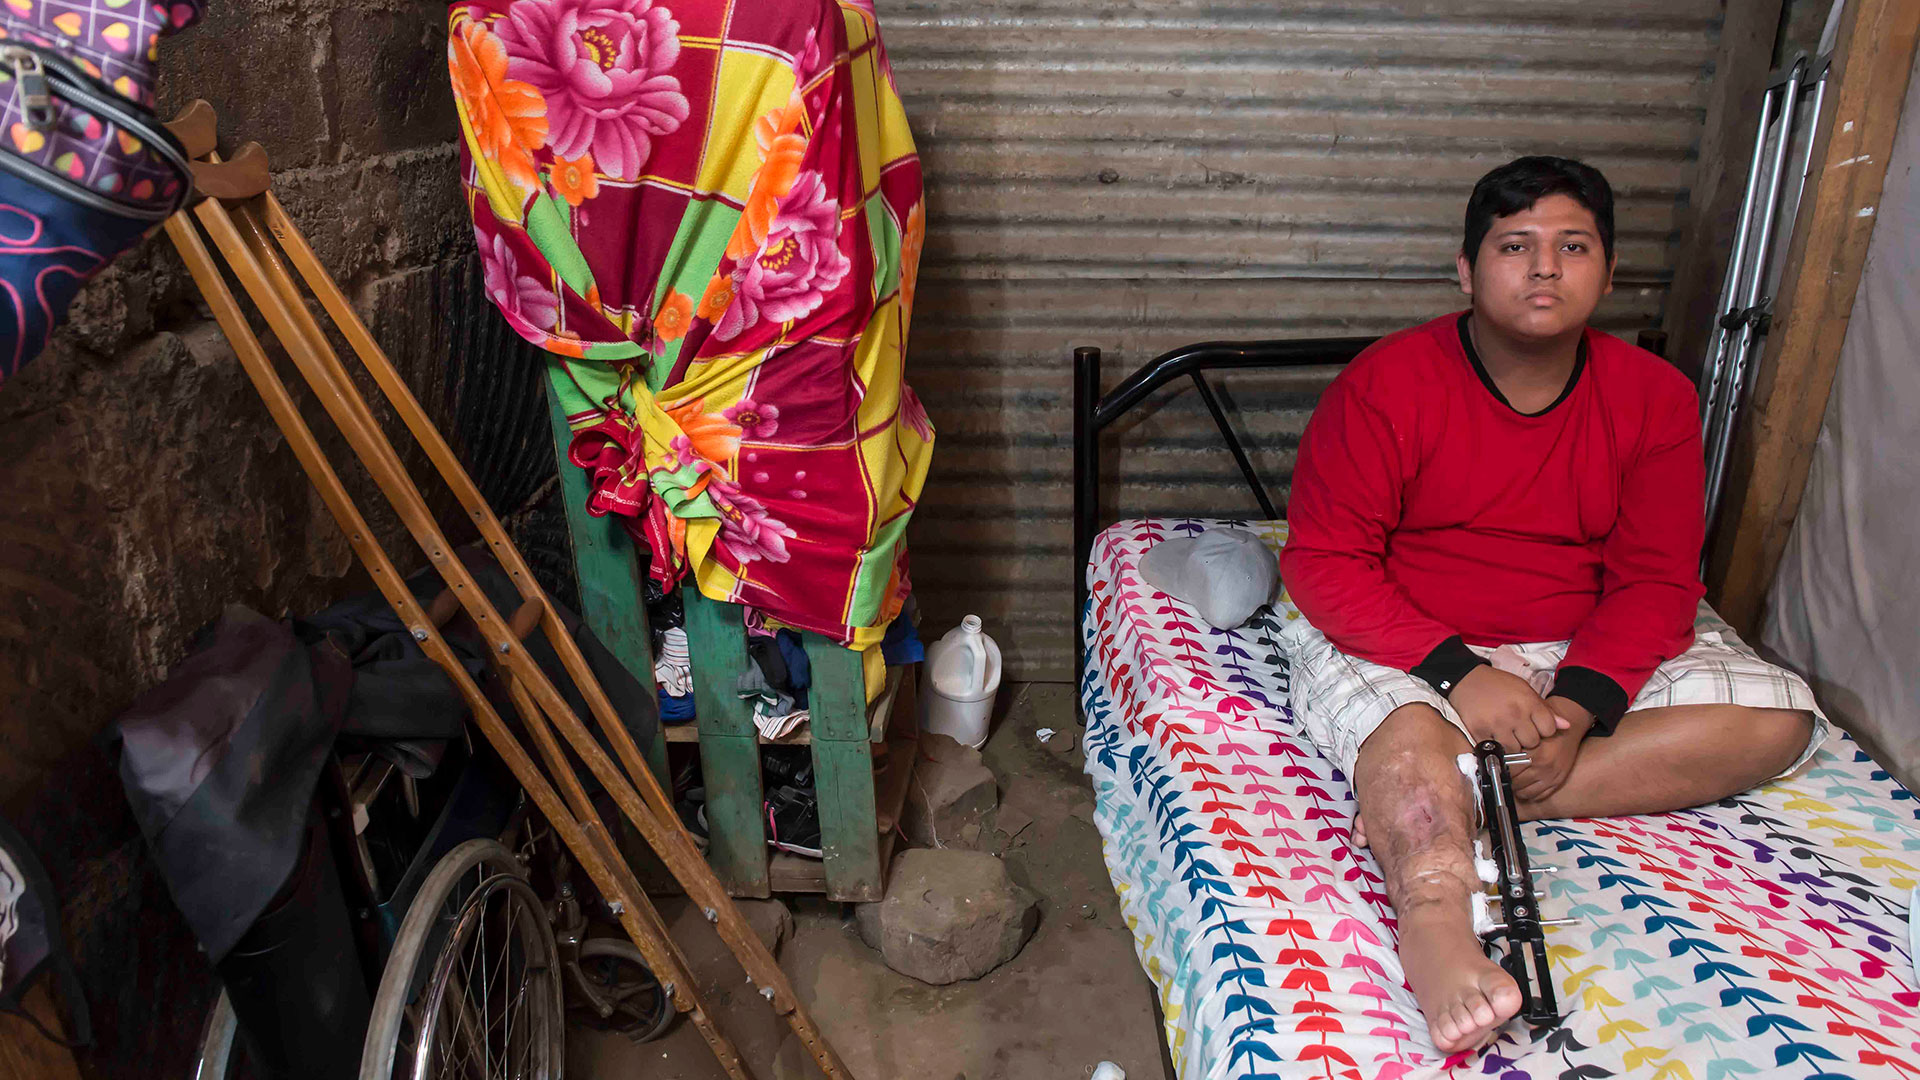  Isaac Ramírez vive con su madre en una pequeña casa con piso de tierra en un barrio de Managua. Esta foto fue tomada antes de que le amputaran la pierna. Foto: Óscar Navarrete